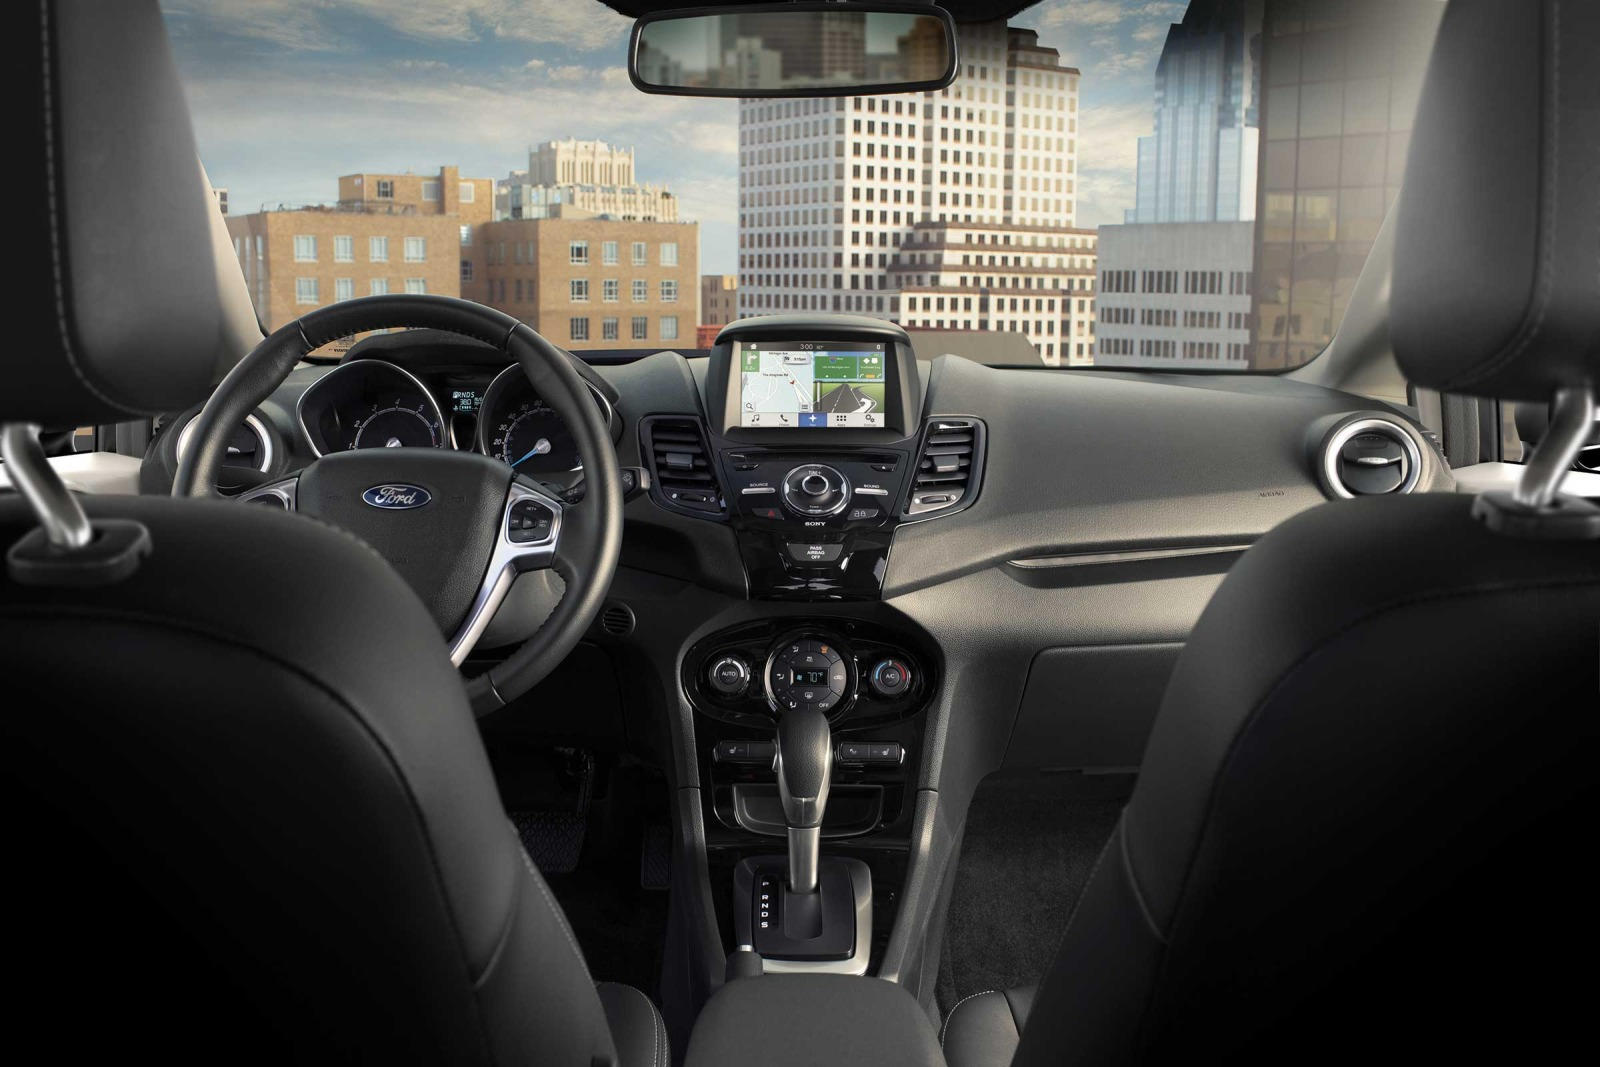 2019 Ford Fiesta Hatchback Dashboard